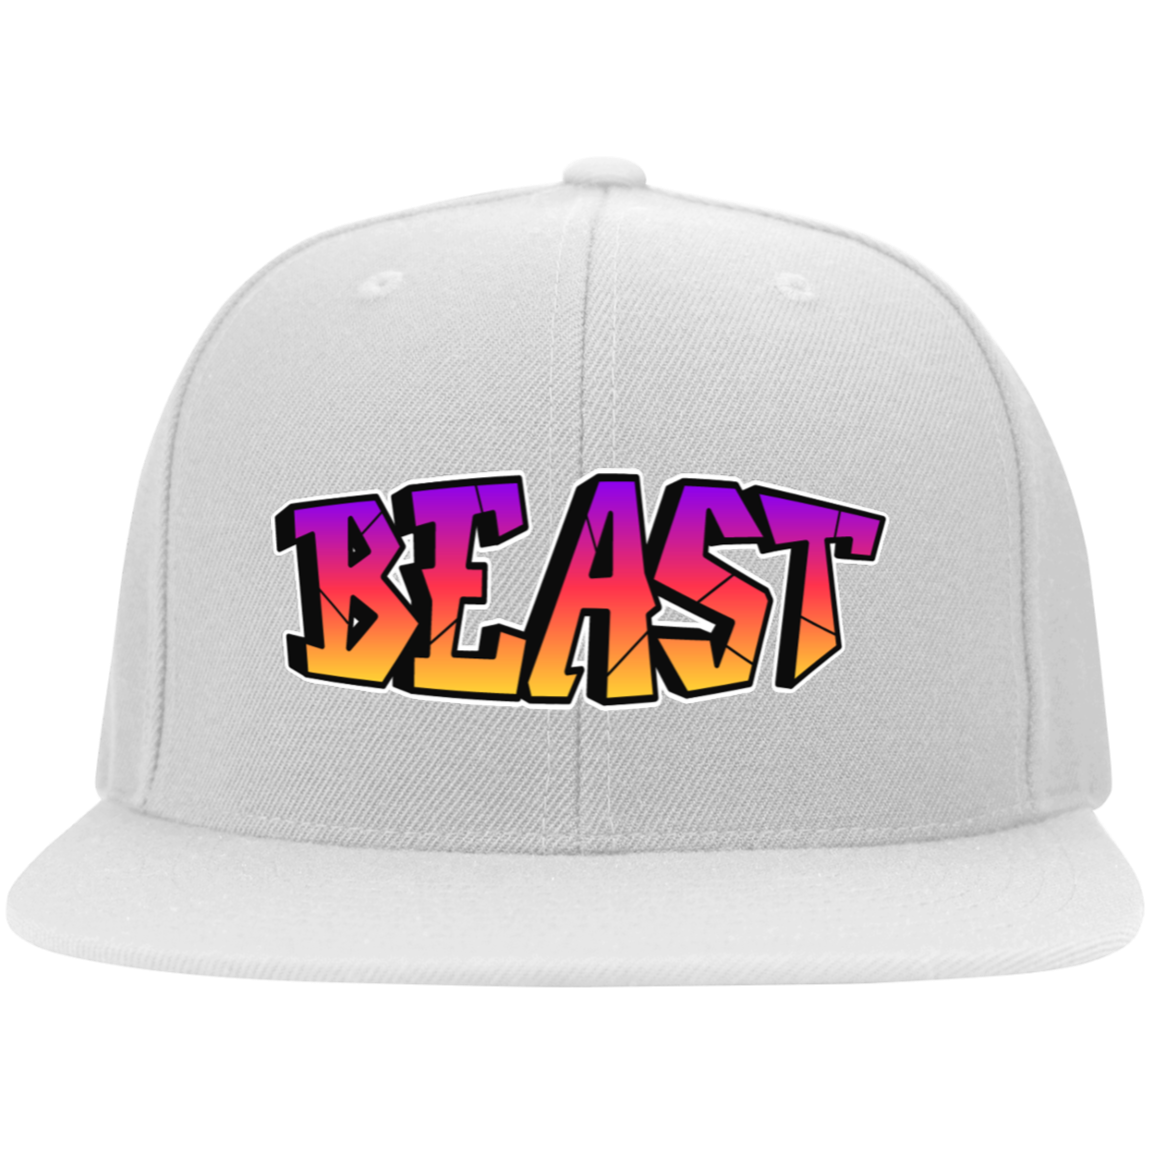 Beast Embroidered Flat Bill Twill Flexfit Cap